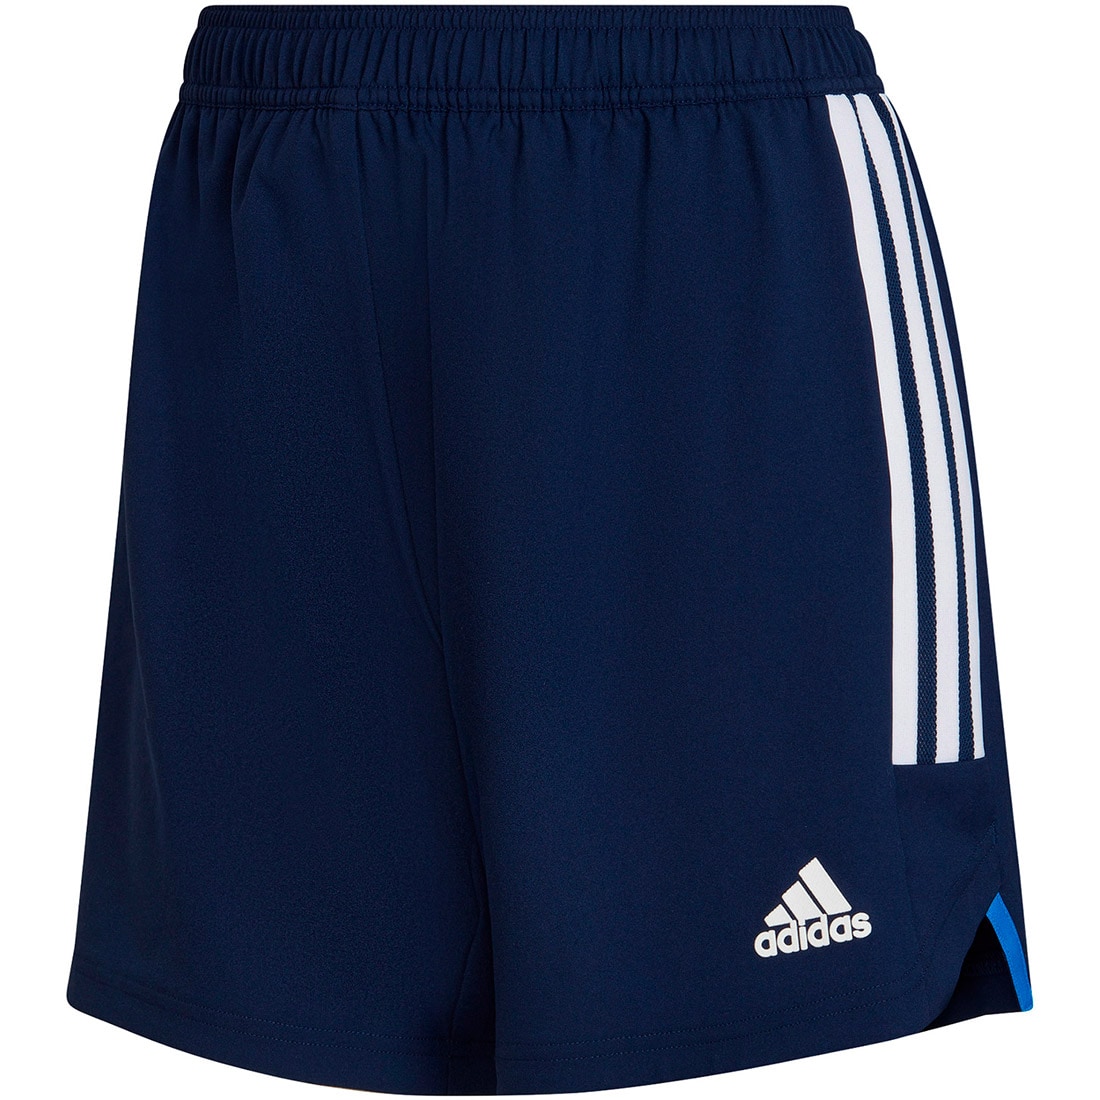 Adidas Damen MD Shorts Condivo 22 blau-weiß